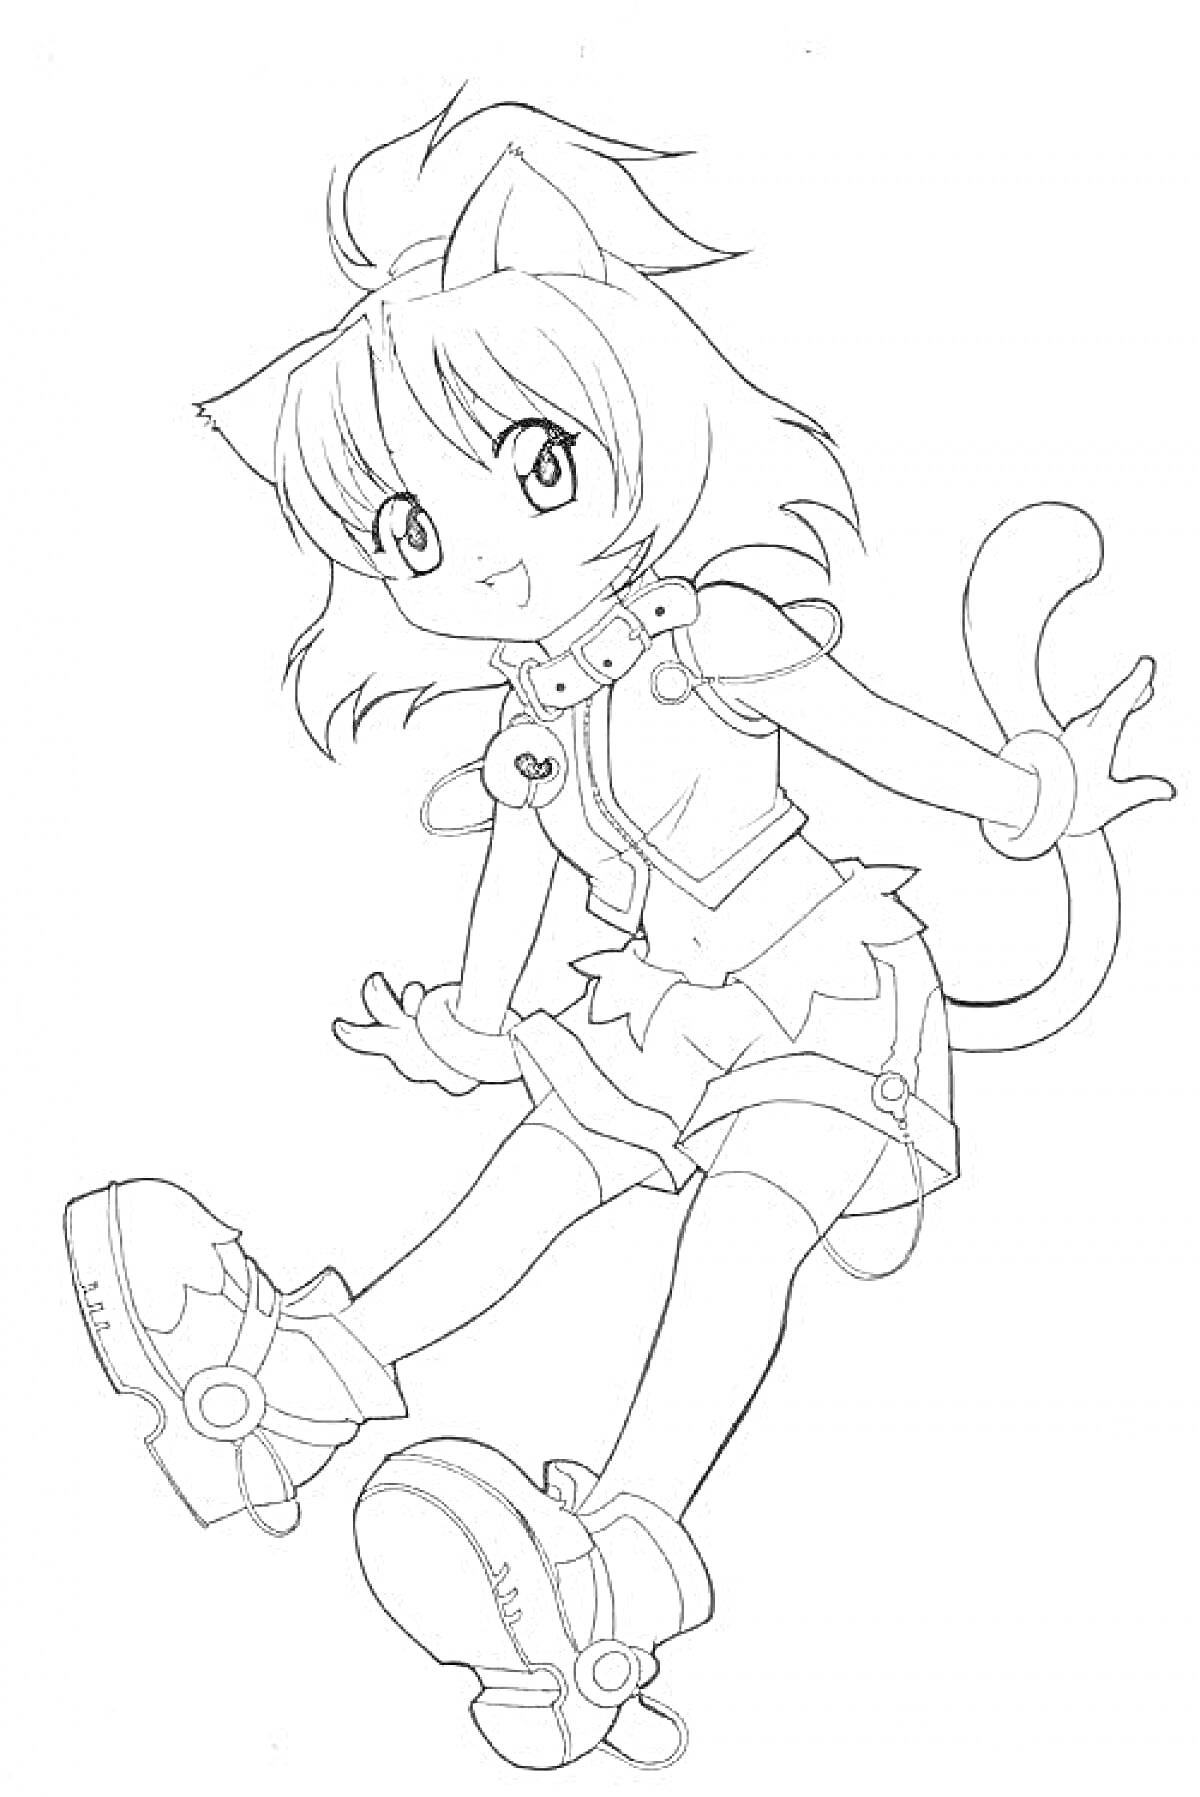 Раскраска Девочка в аниме стиле с кошачьими ушками и хвостом, в короткой юбке и ботинках